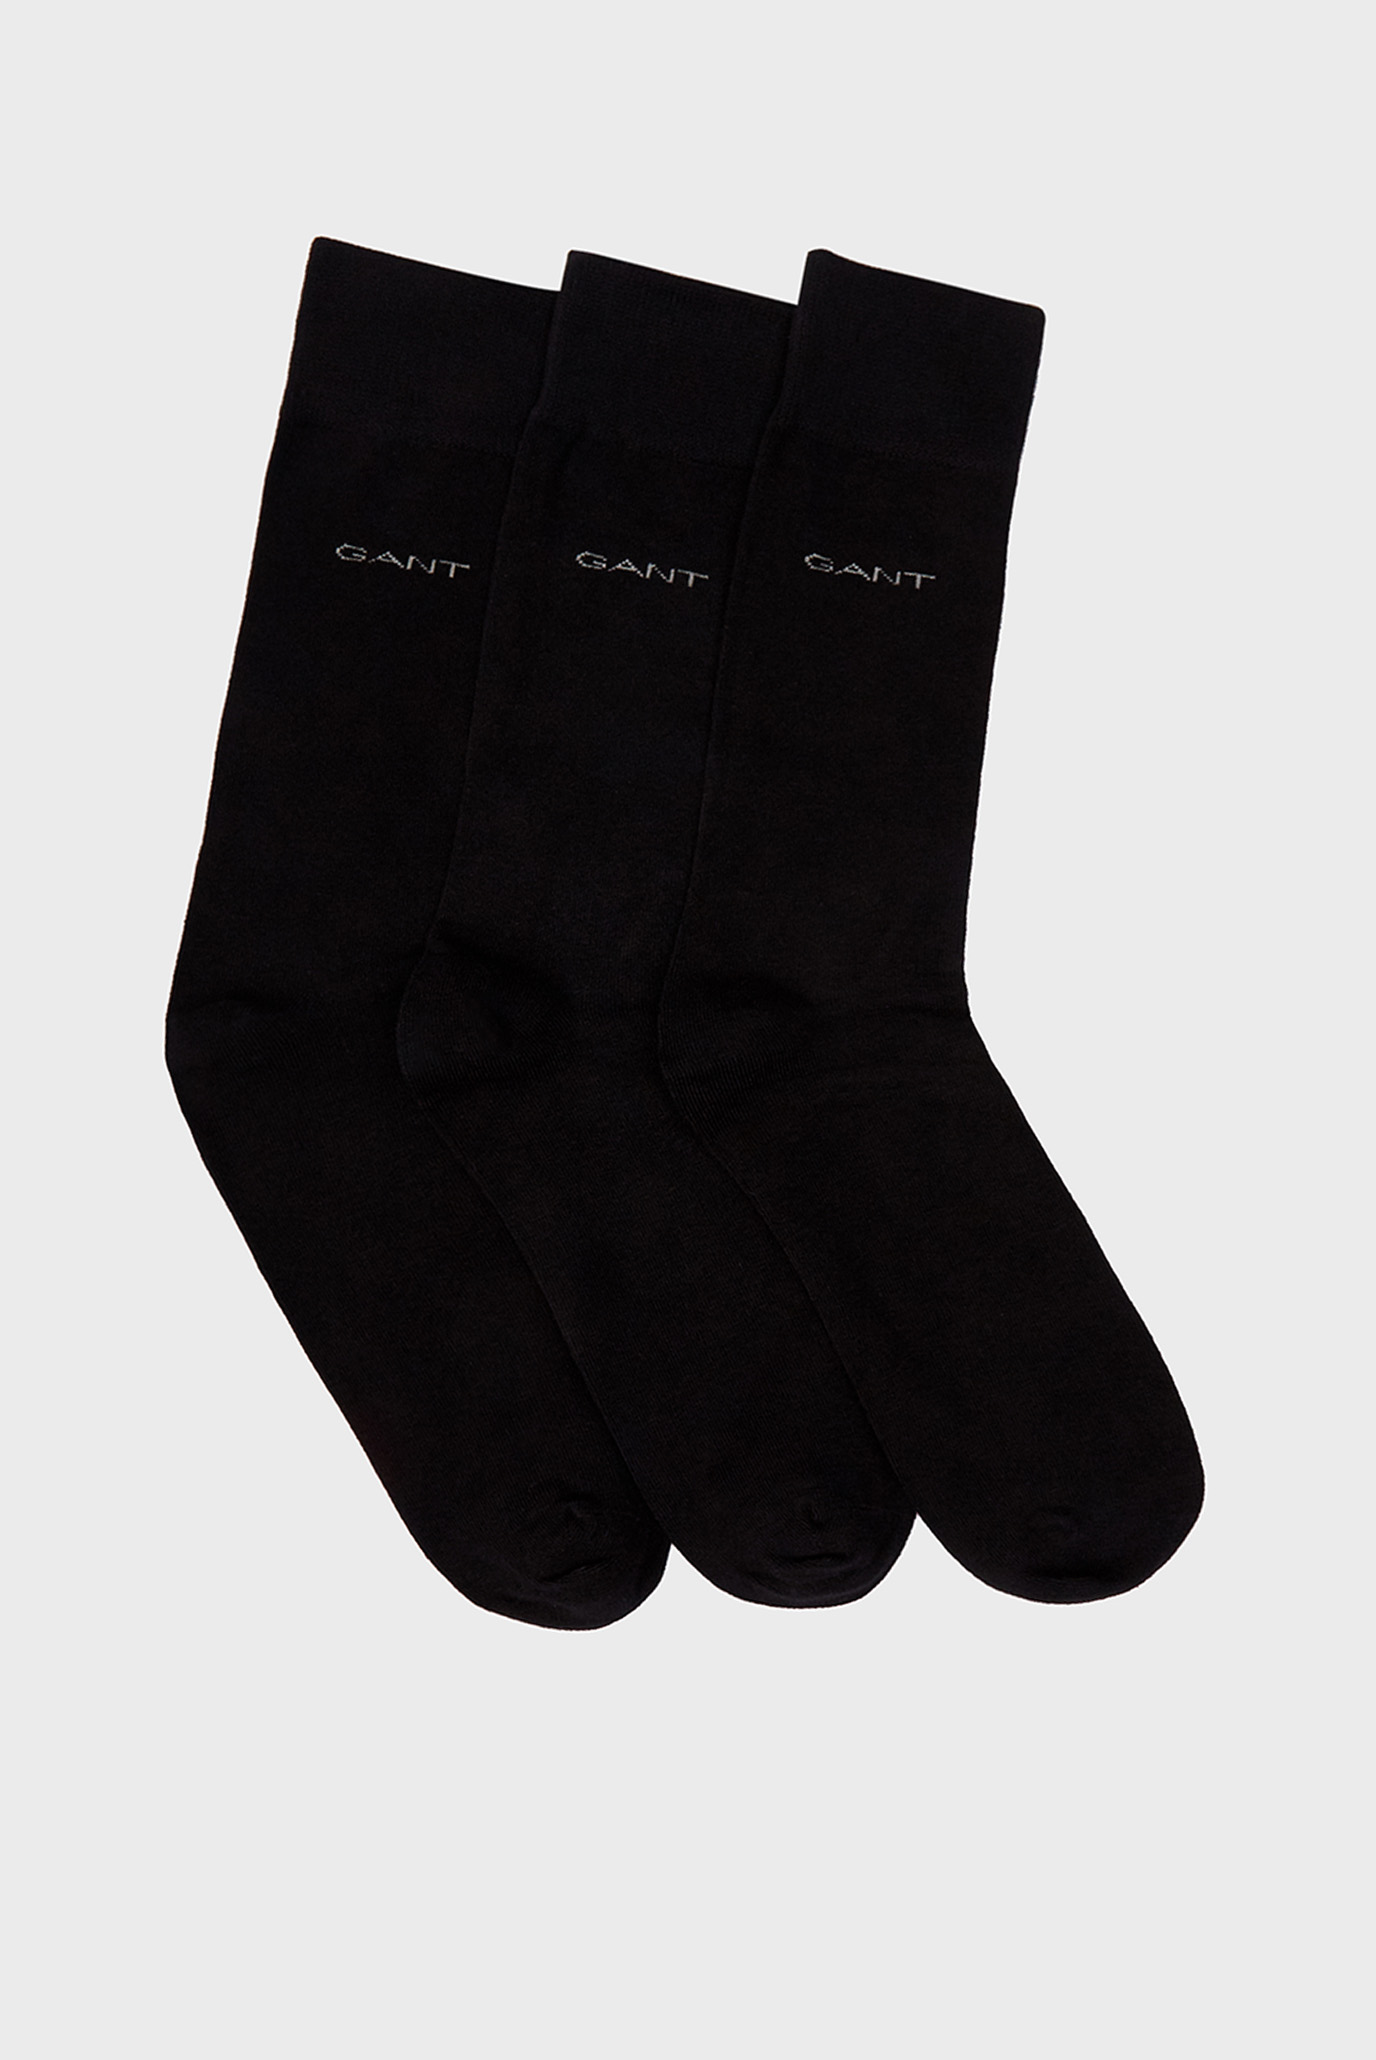 Чоловічі чорні шкарпетки SOFT COTTON (3 пари) 1